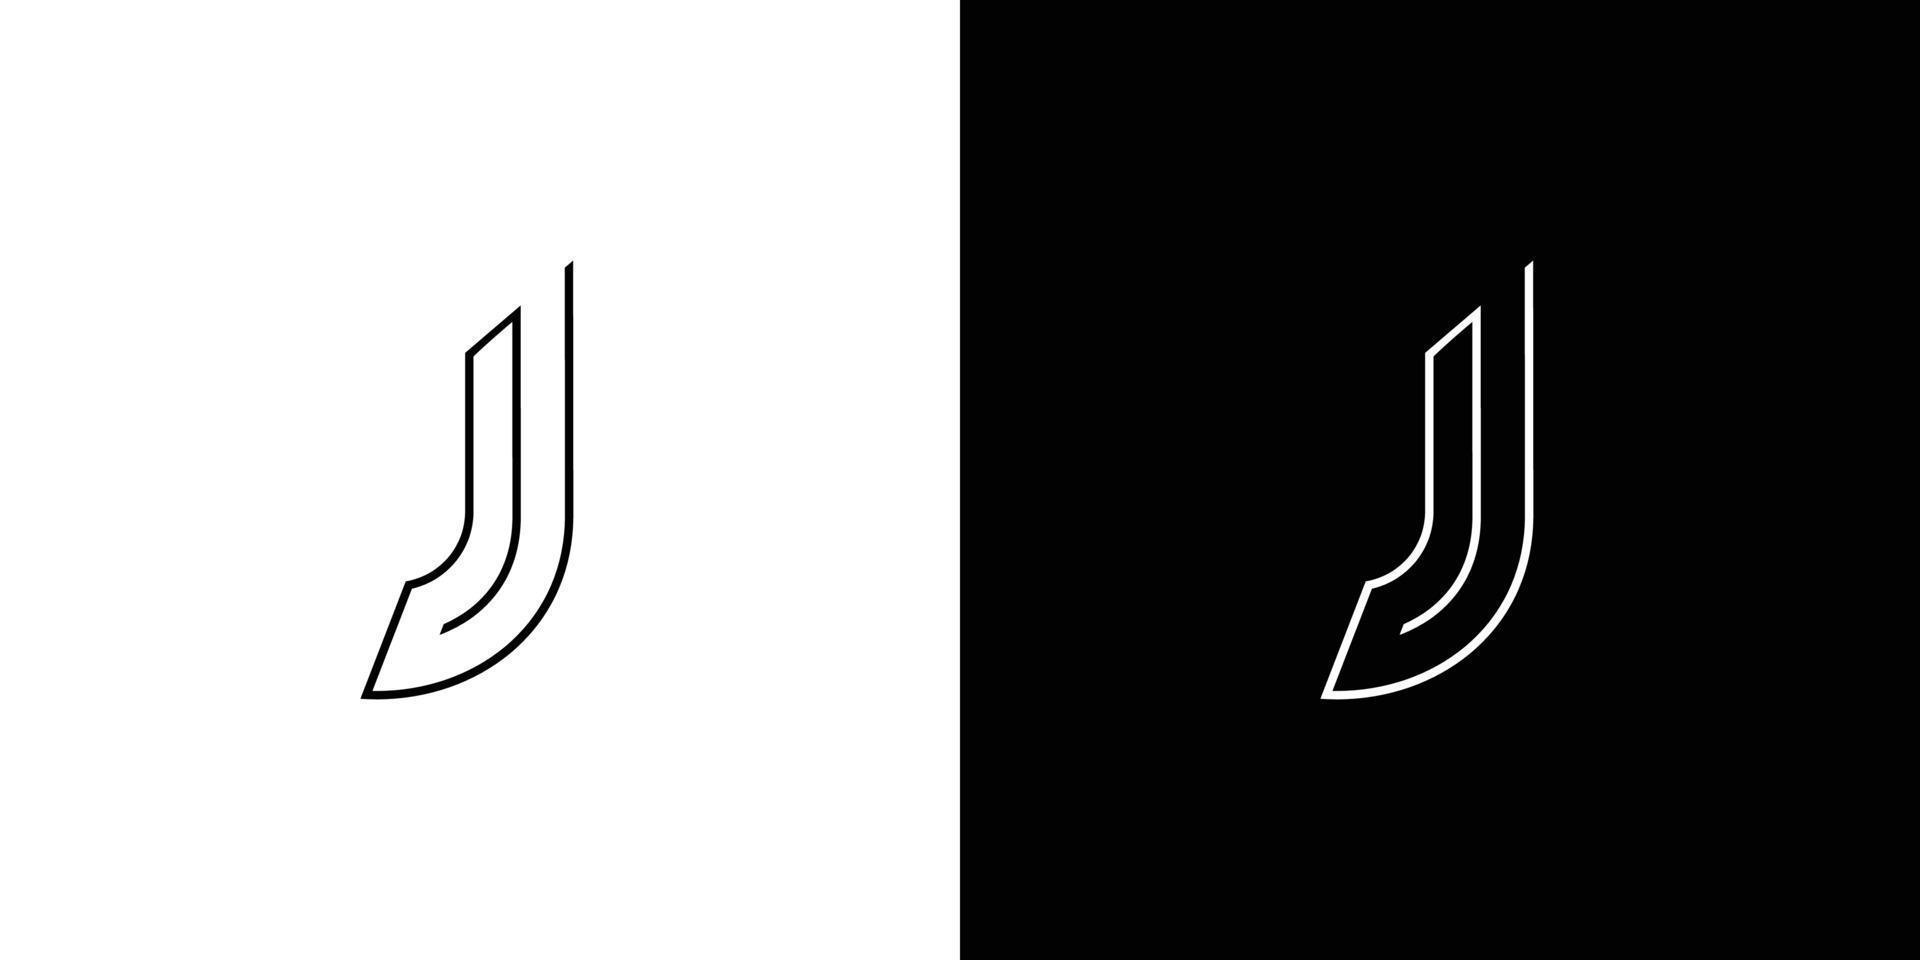 design simples e moderno do logotipo das iniciais da letra j vetor